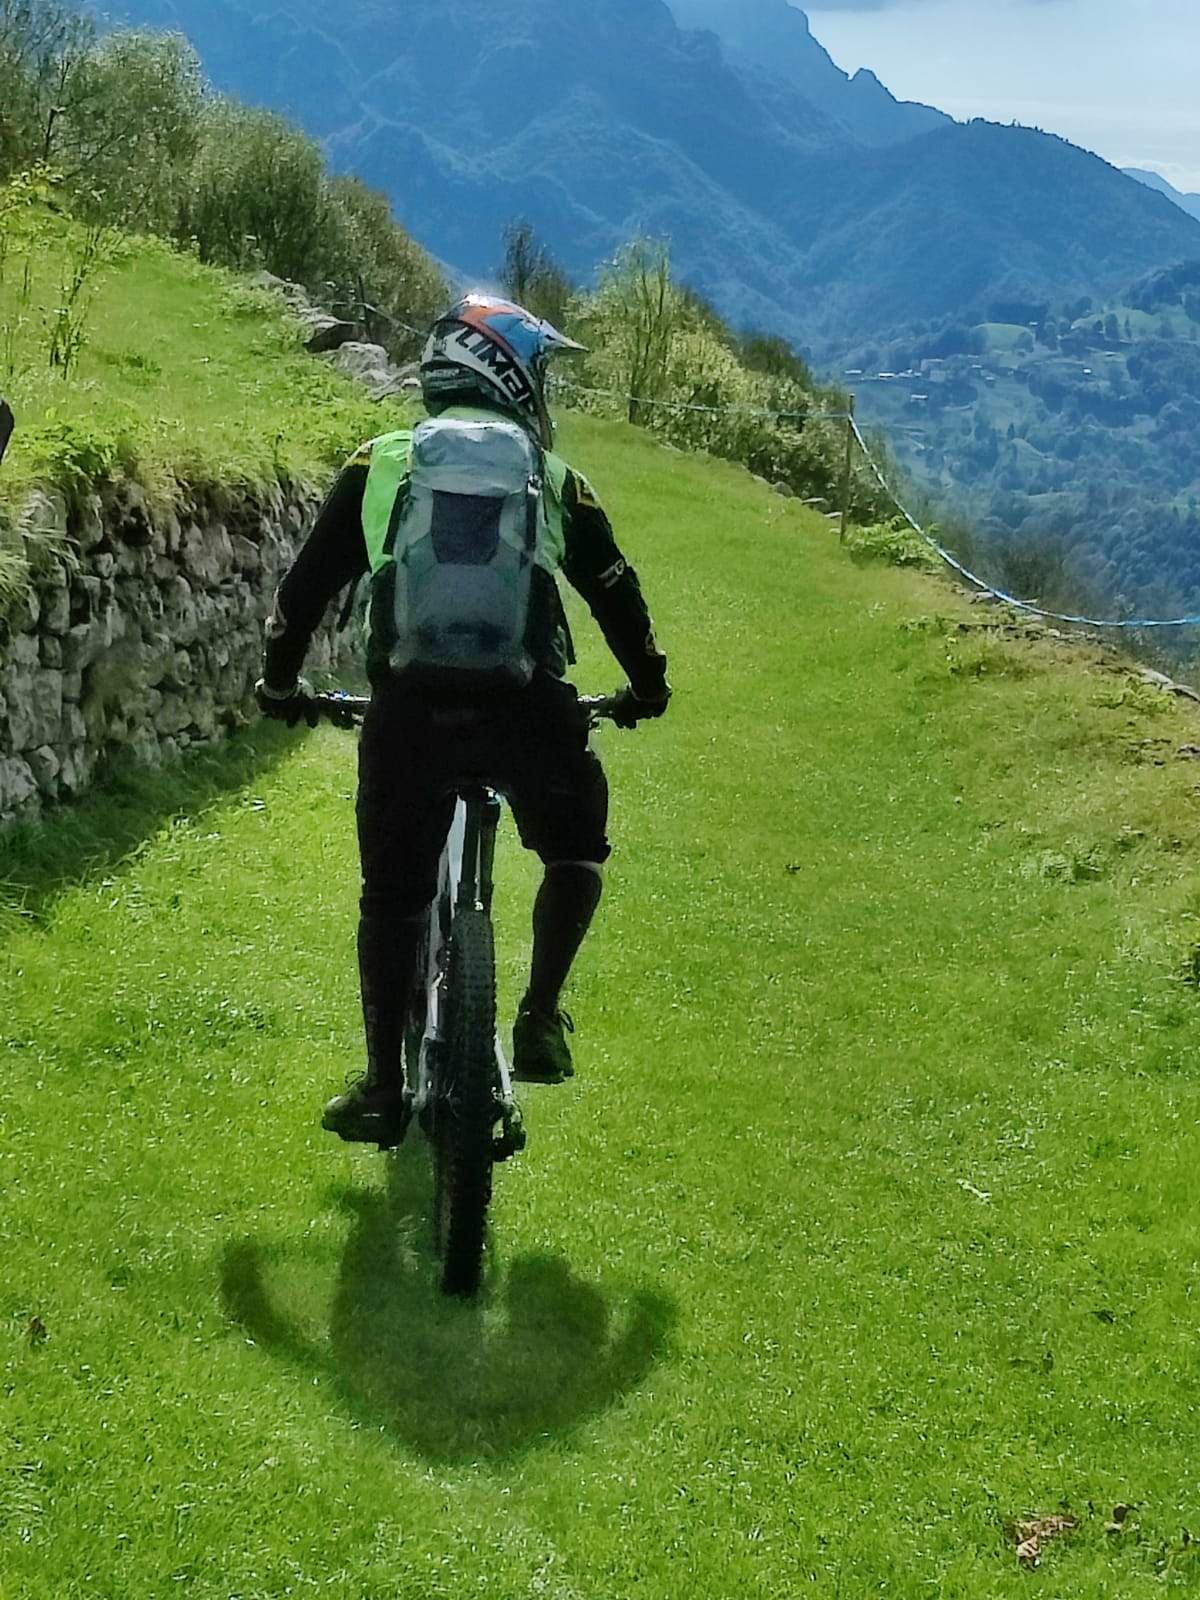 cyklist med integralhjälm och skyddsryggsäck cyklar på en gräsbeklädd stig